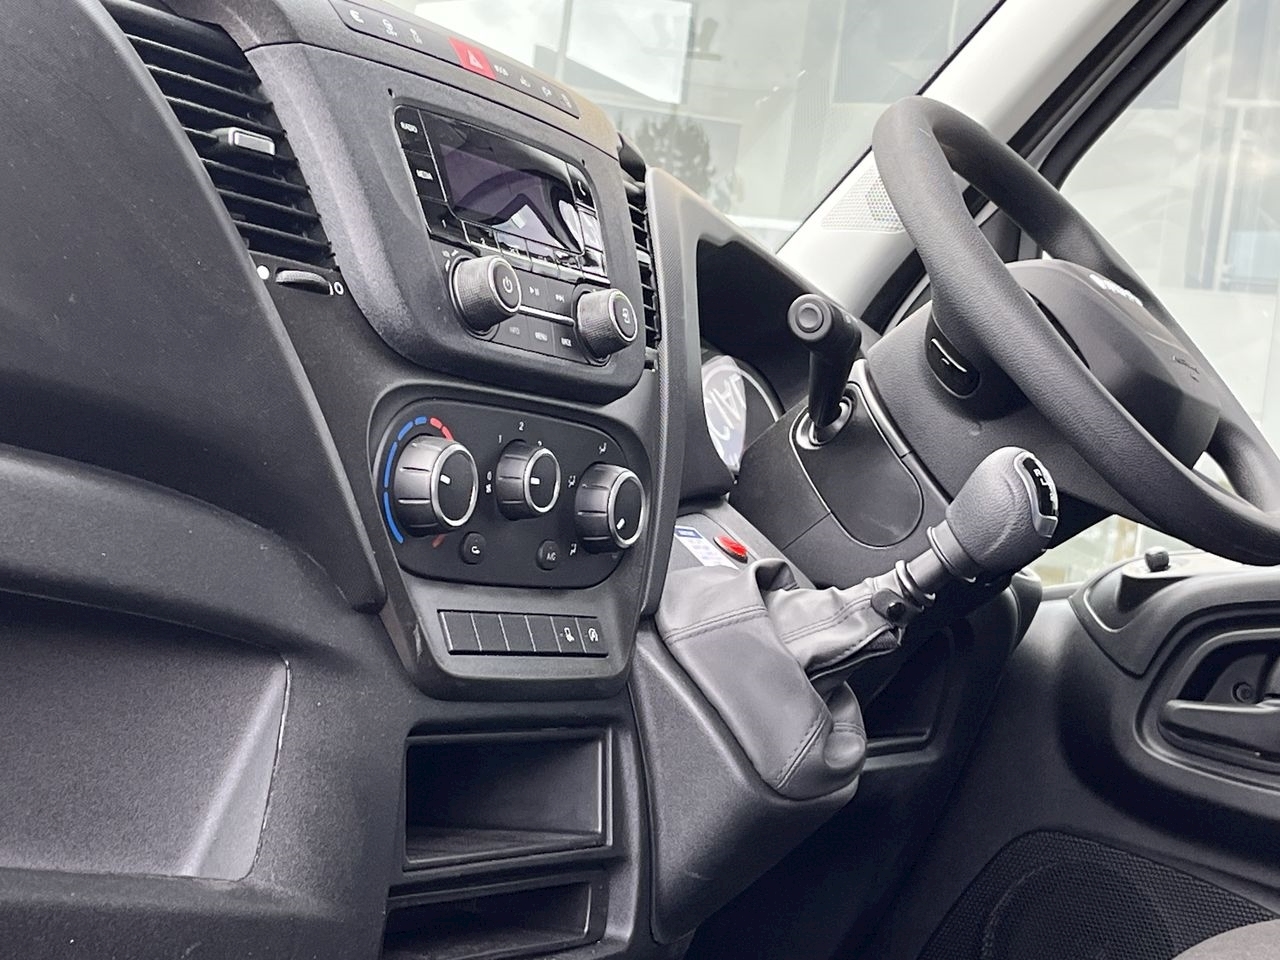 Iveco Daily 35-210 Hi-Matic Schoon Combi Van (2023) Exterior and Interior 